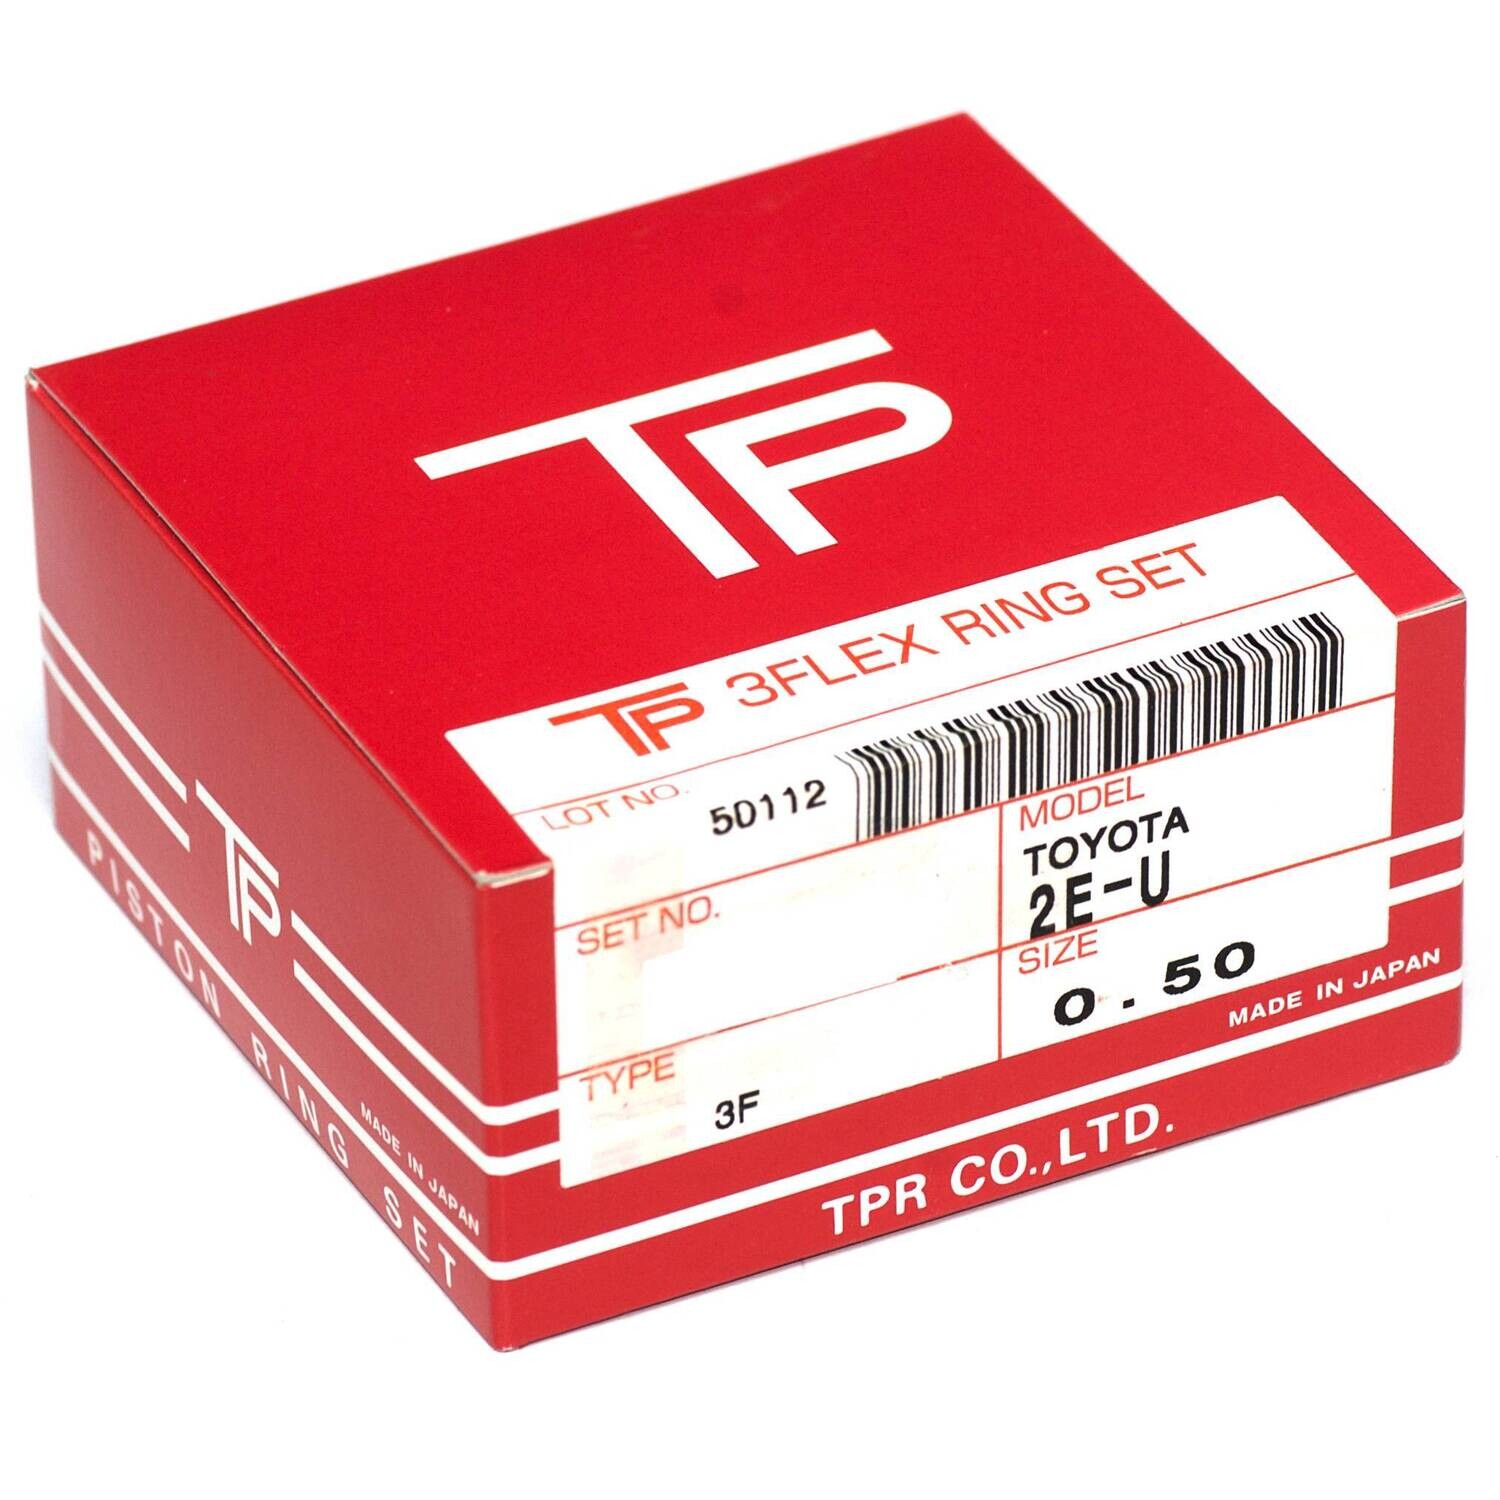 TP Piston Ring Set .50 mm Oversize Fits Toyota 2E